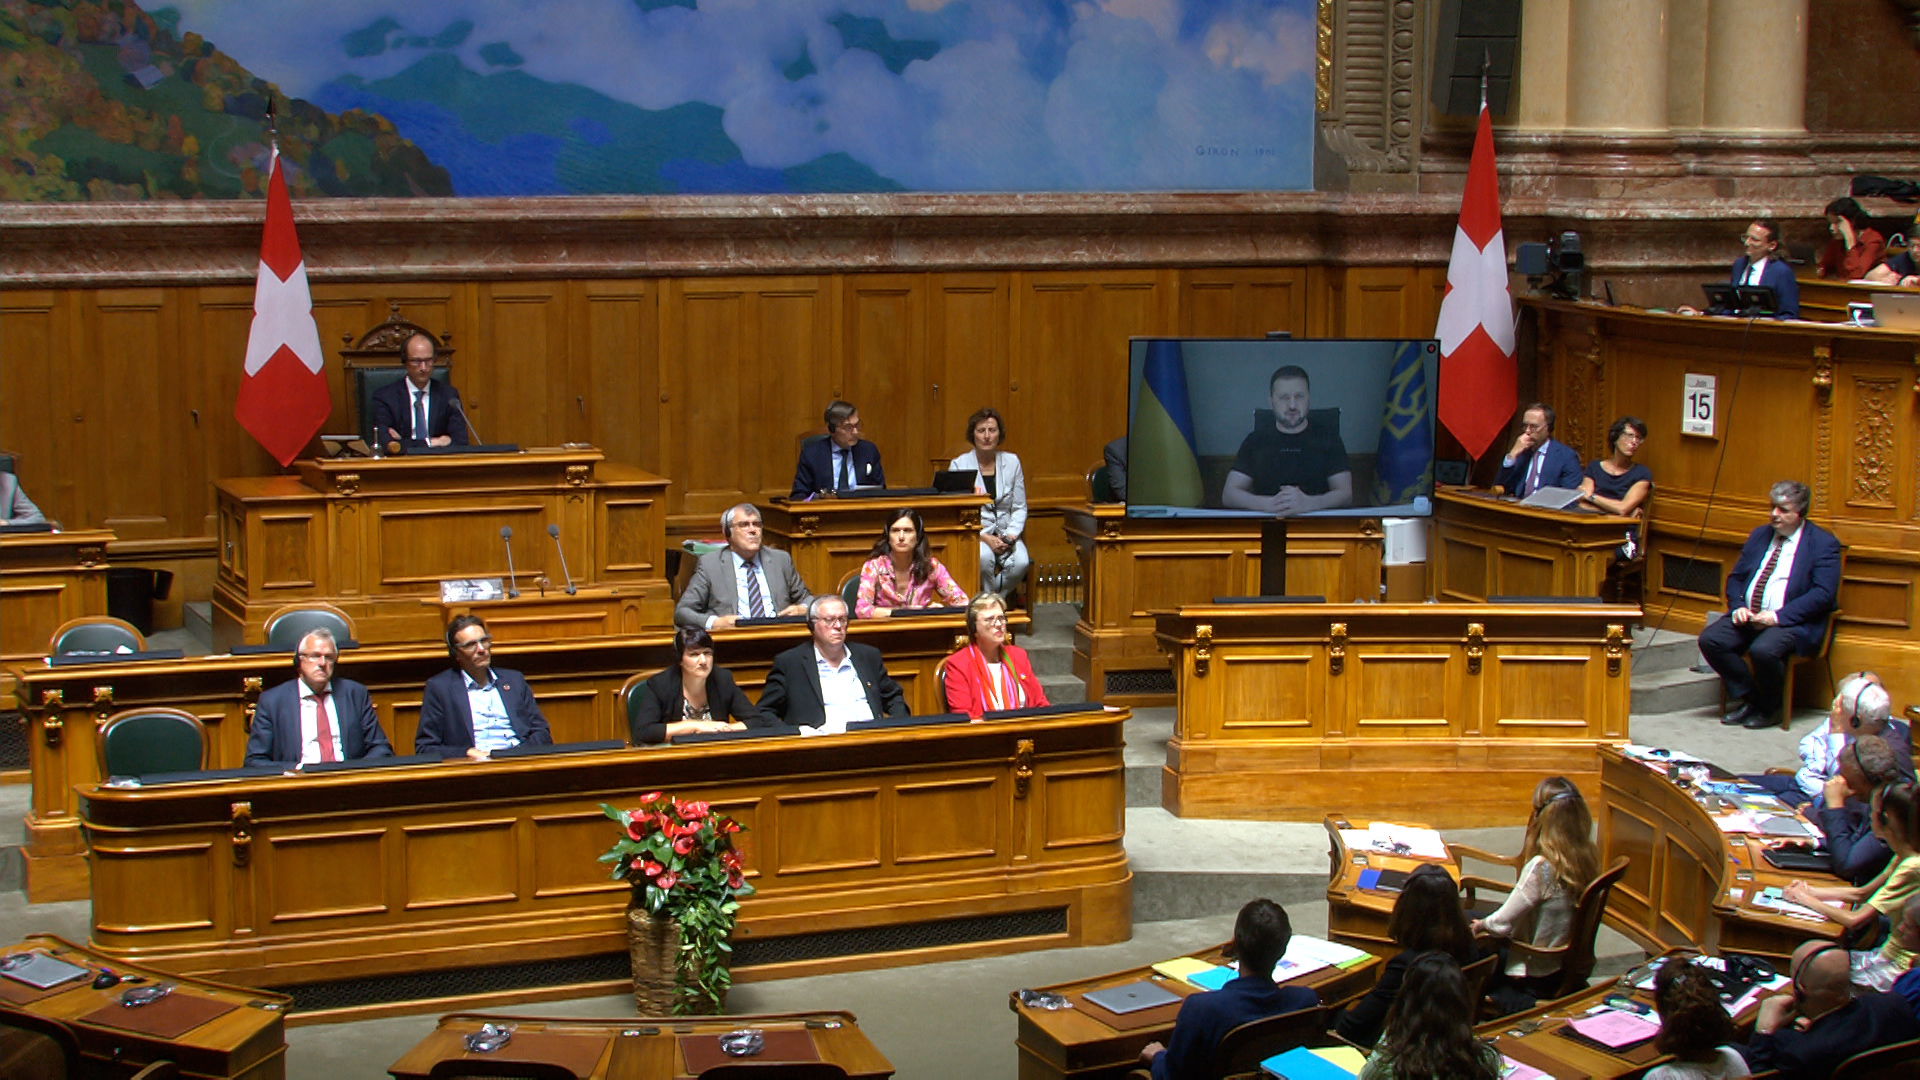 Zelensky s speech to the Swiss parliament